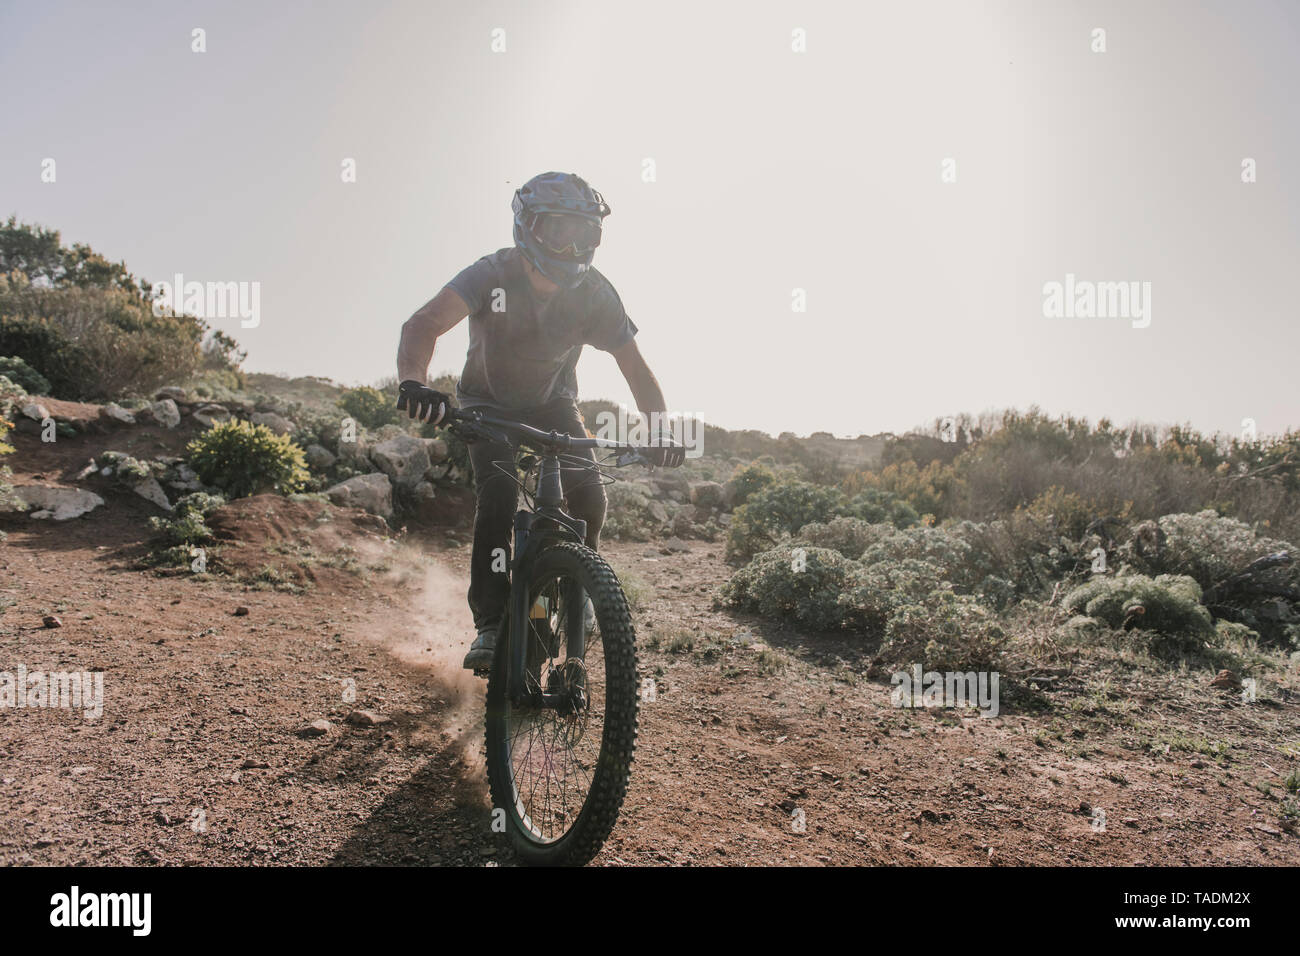 Spanien, Lanzarote, Mountainbiker auf einer Reise in Wüstenhaft Landschaft Stockfoto